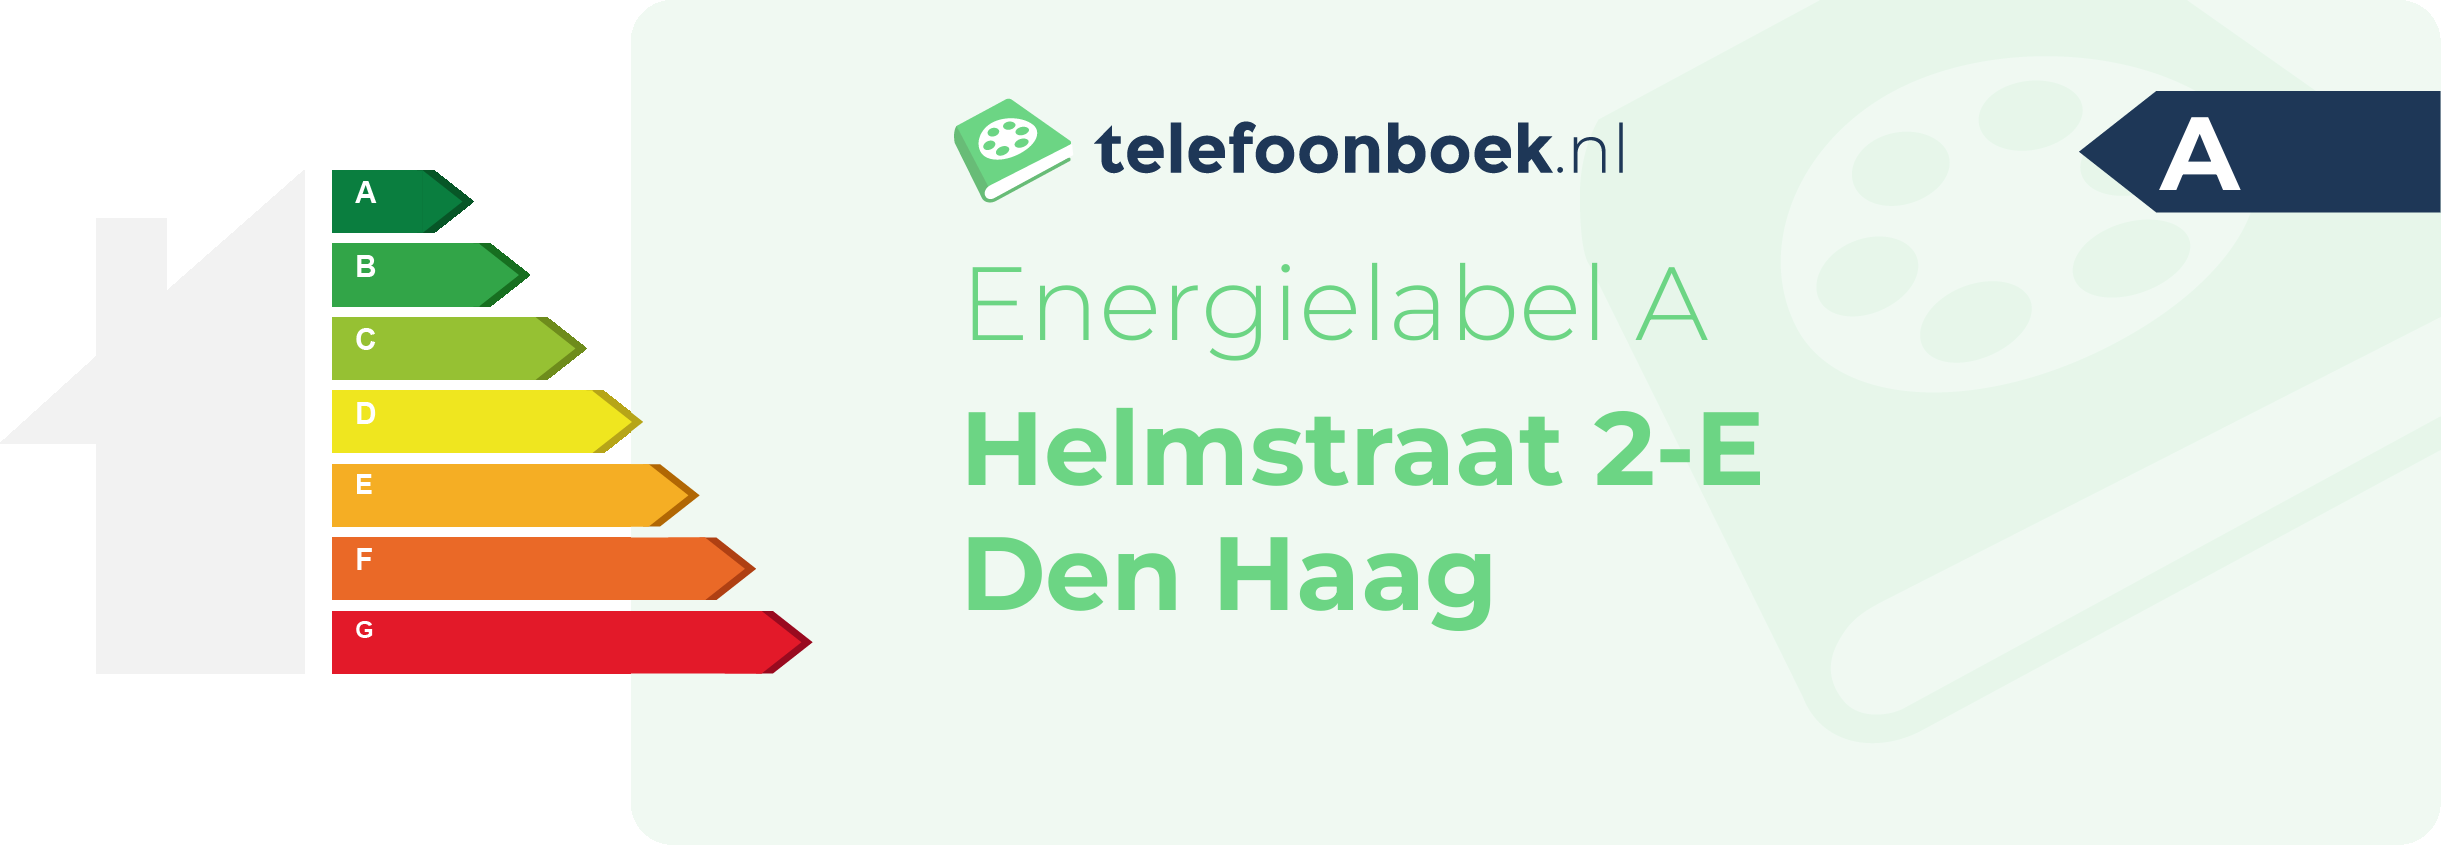 Energielabel Helmstraat 2-E Den Haag